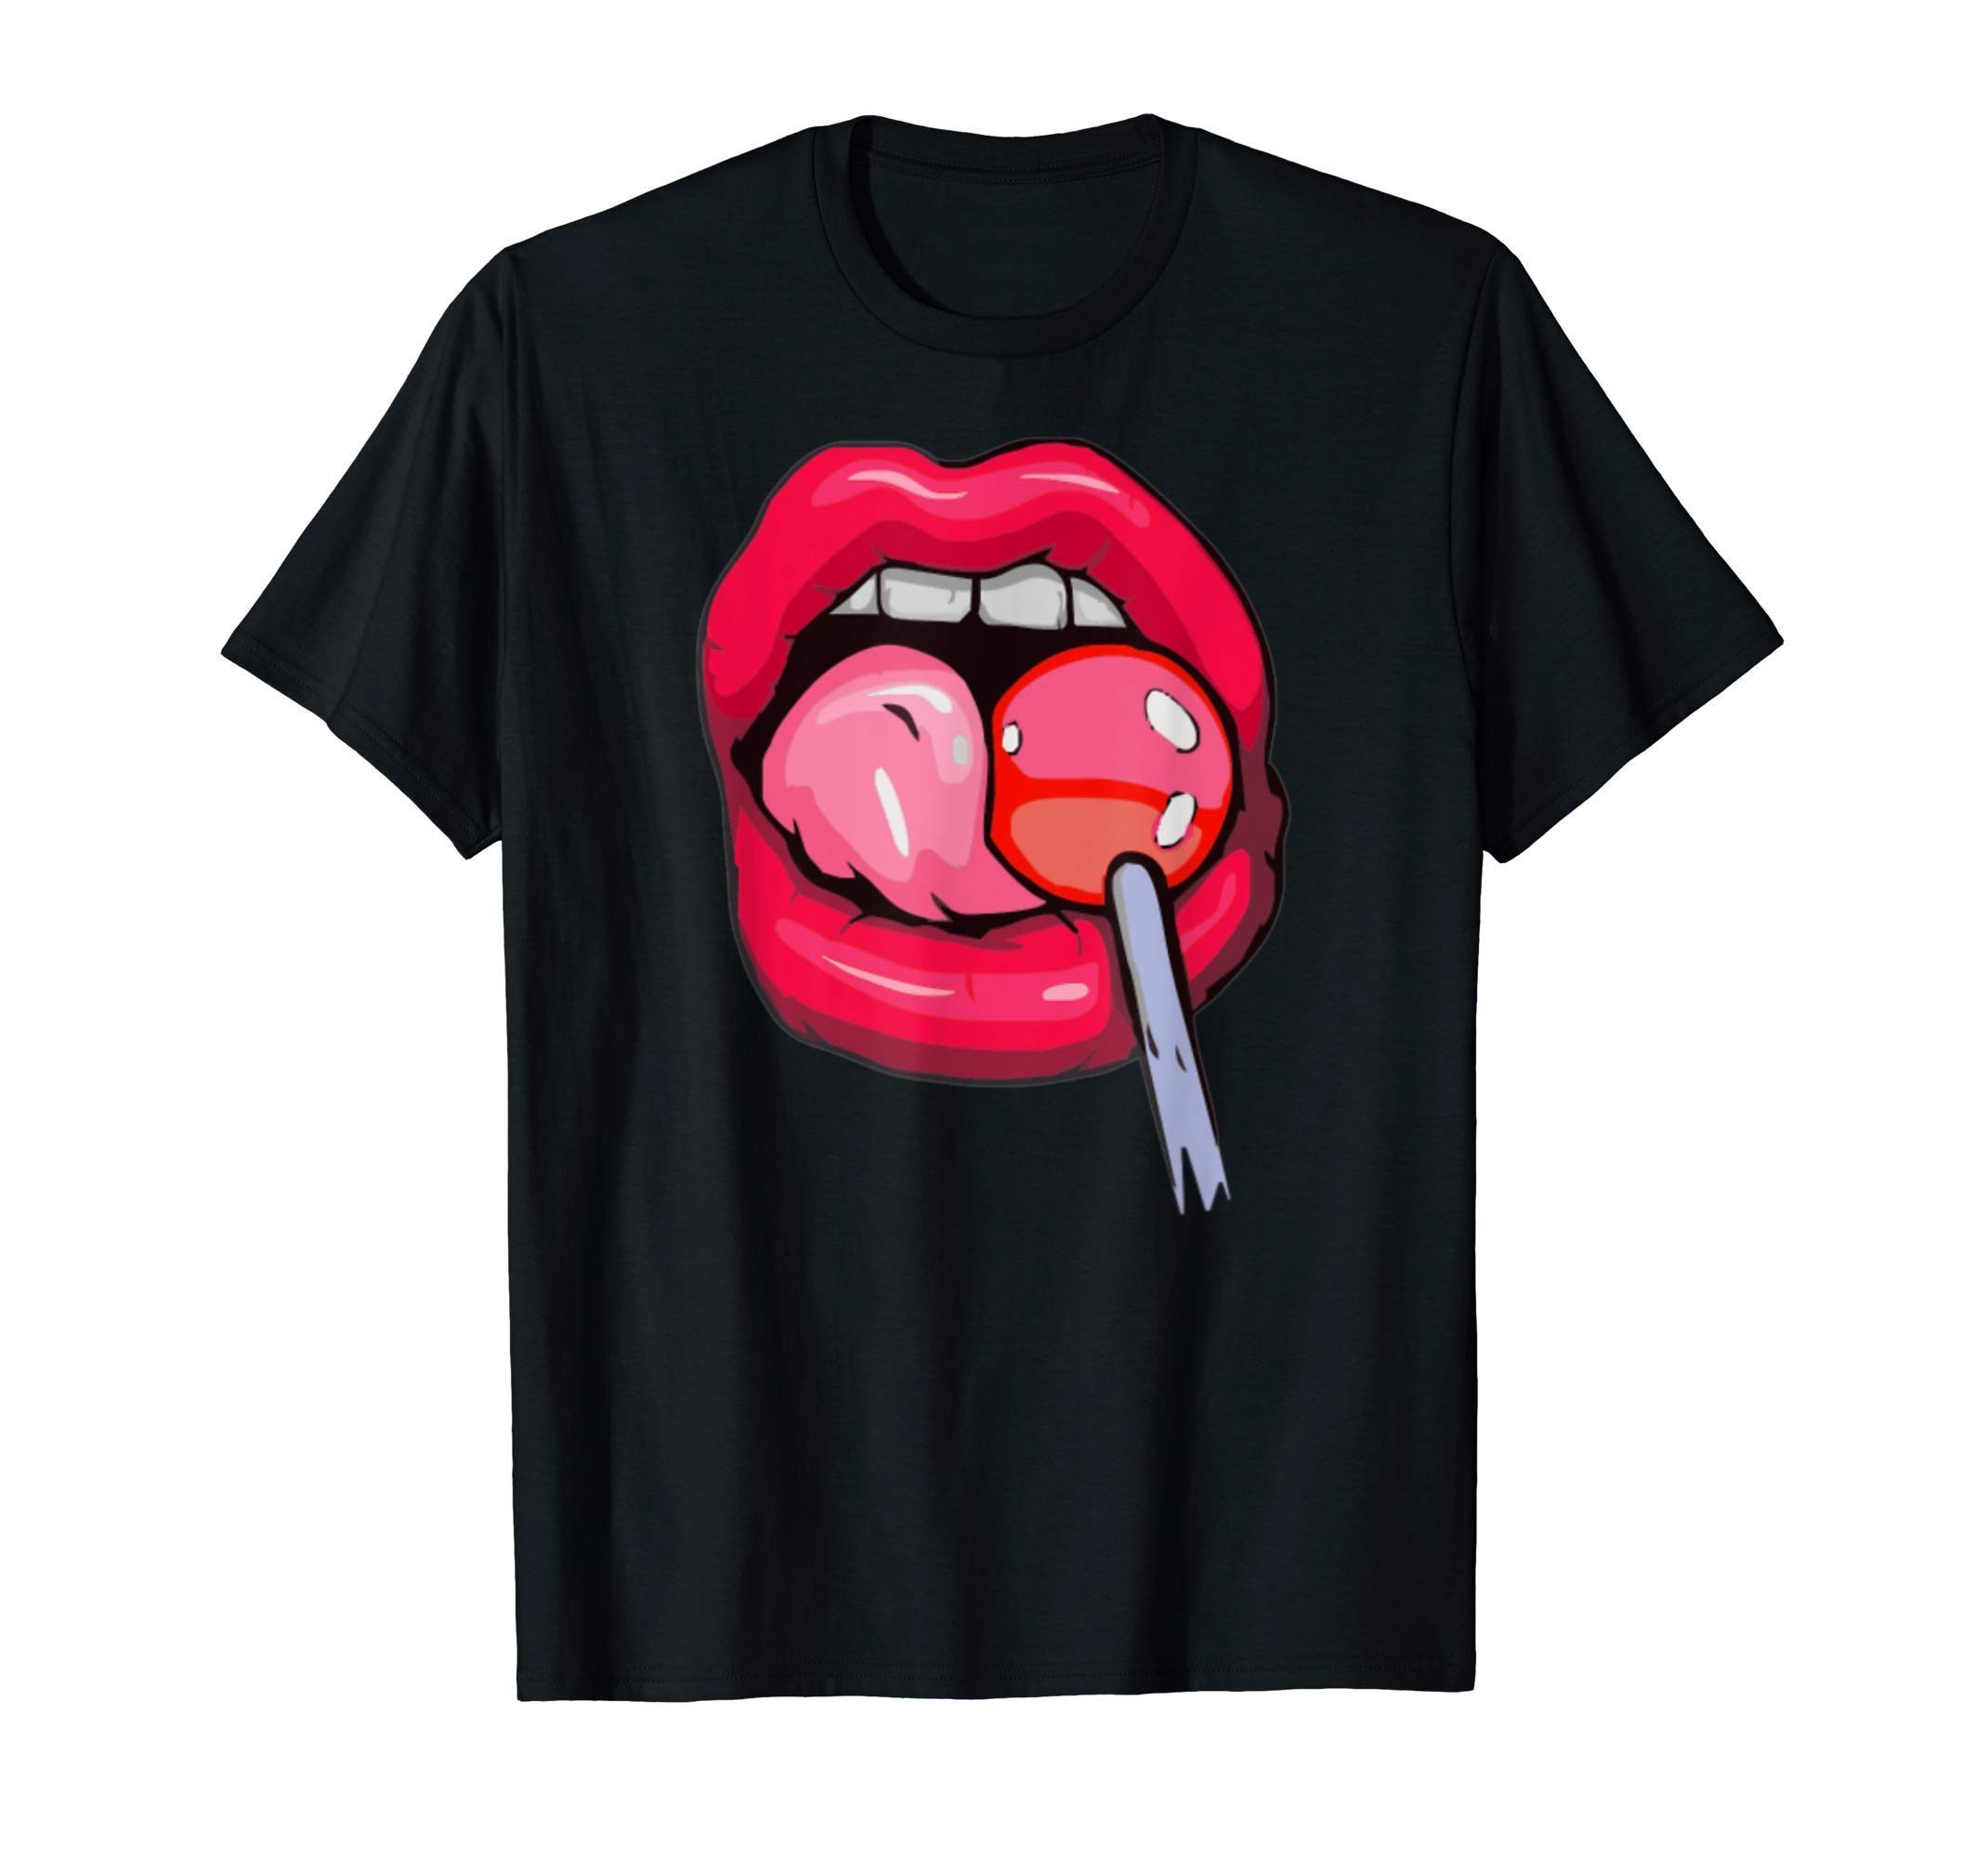 Woman Licking Lollipop T-Shirt - Reviewshirts Office